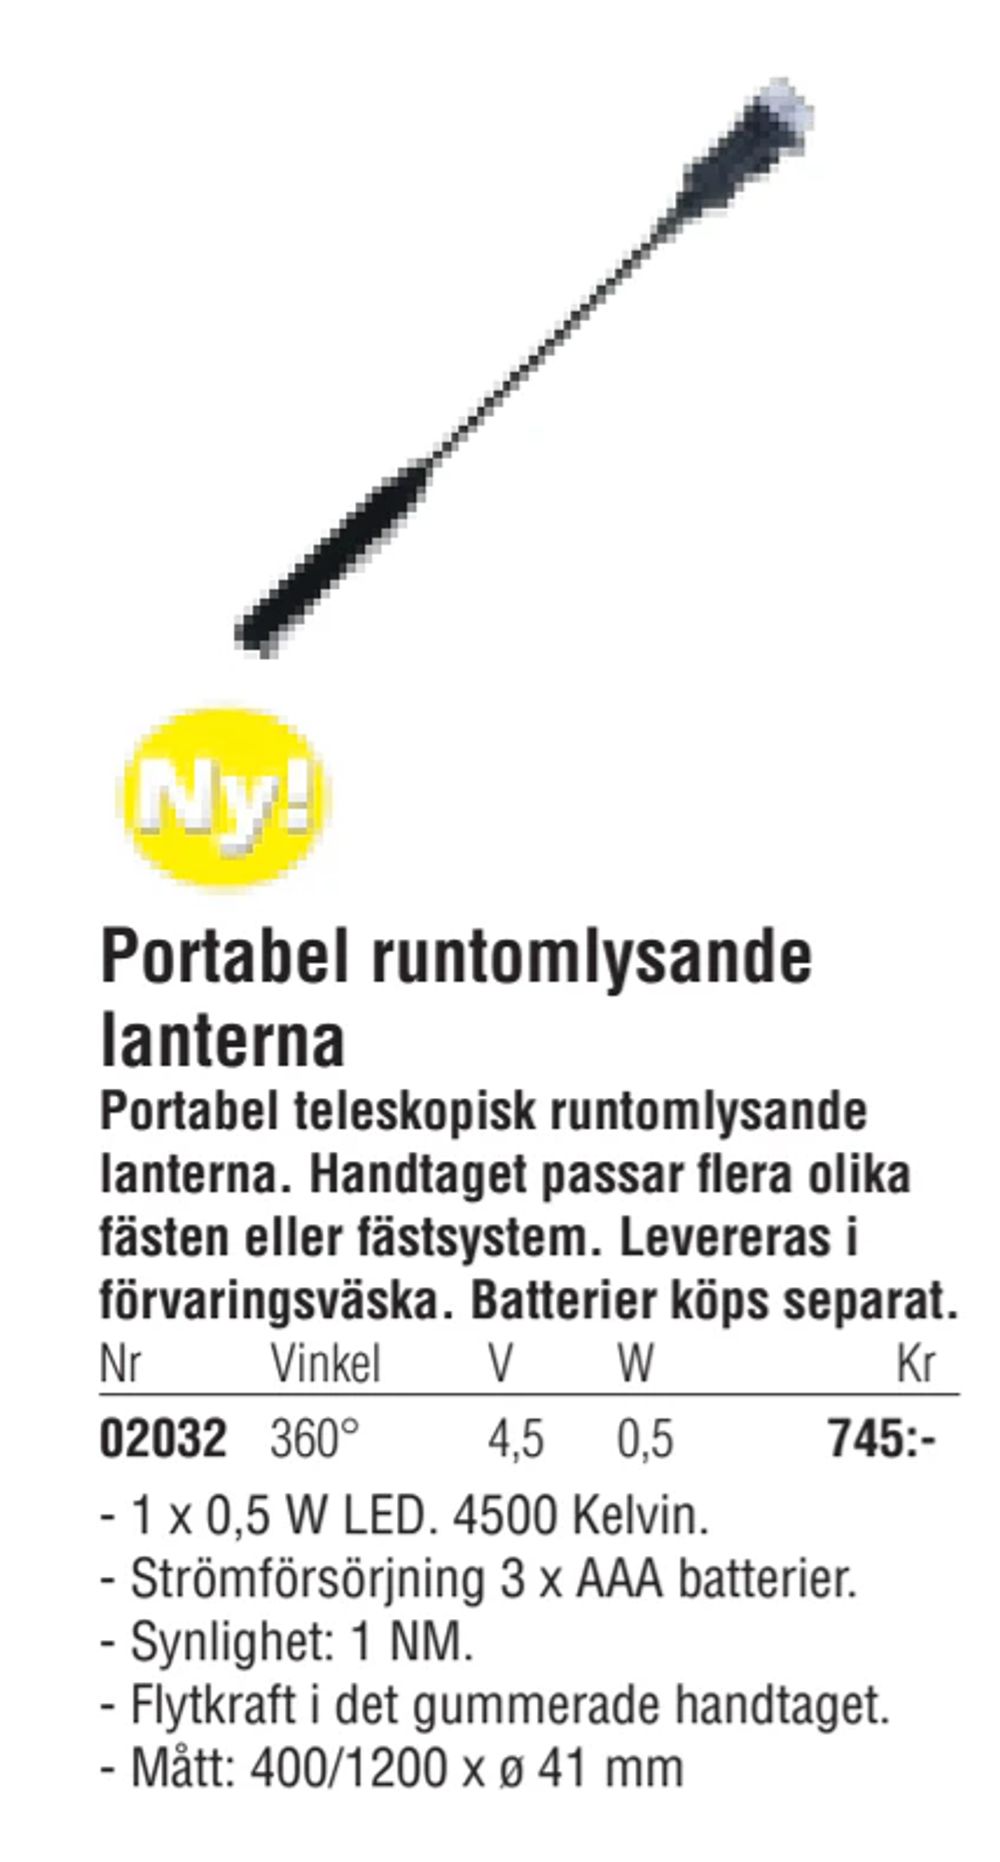 Erbjudanden på Portabel runtomlysande lanterna från Erlandsons Brygga för 745 kr